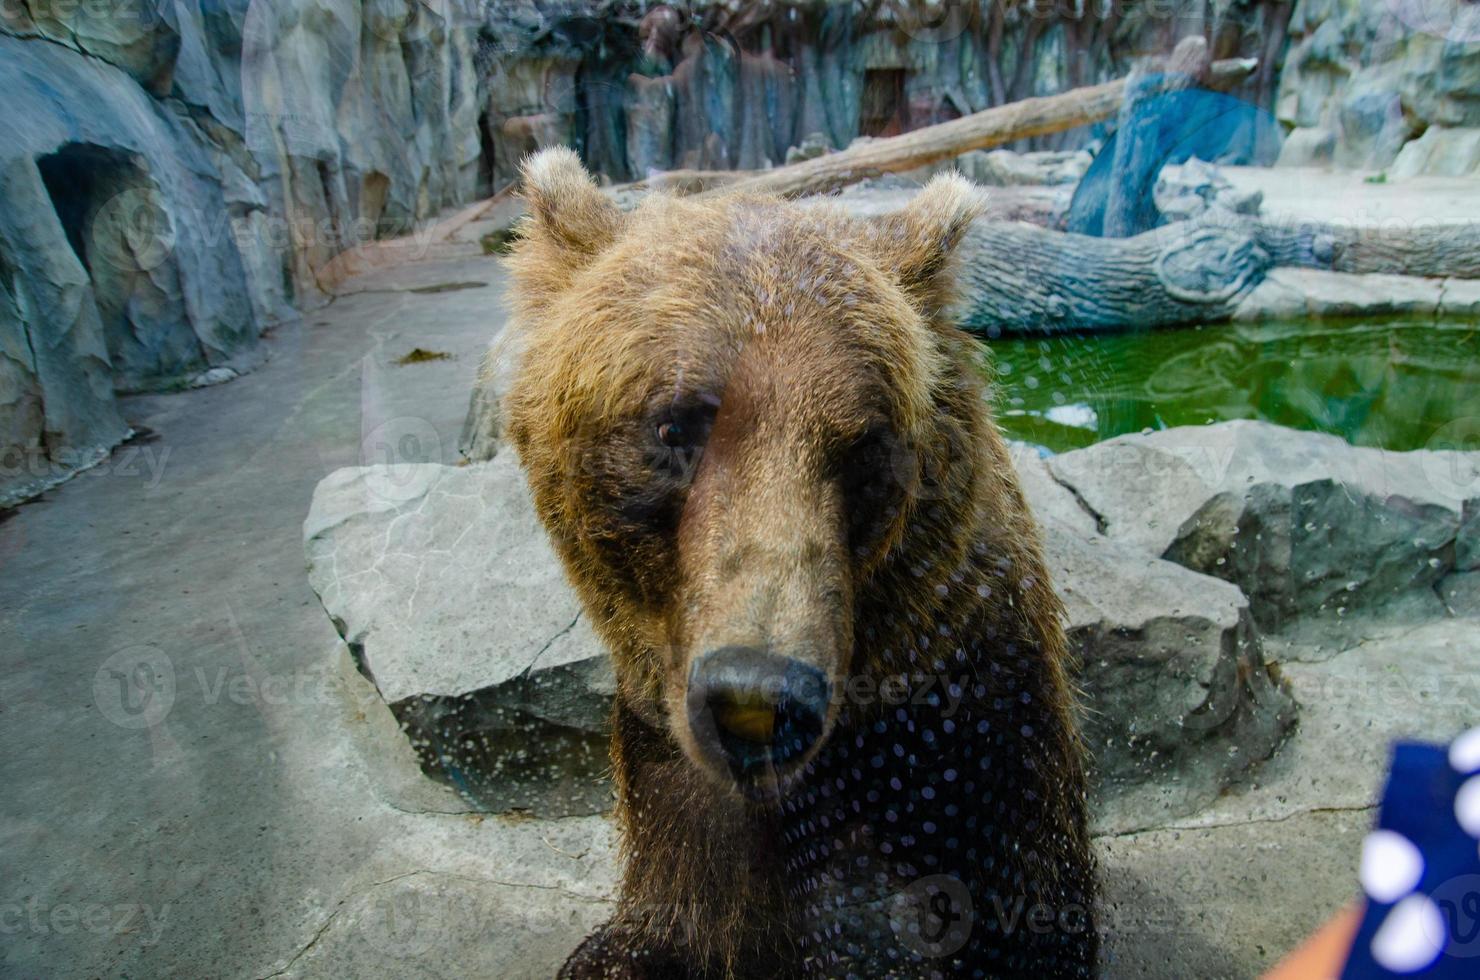 dier rechten. vriendelijk bruin beer wandelen in dierentuin. schattig groot beer steenachtig landschap natuur achtergrond. dier wild leven. volwassen bruin beer in natuurlijk omgeving. foto